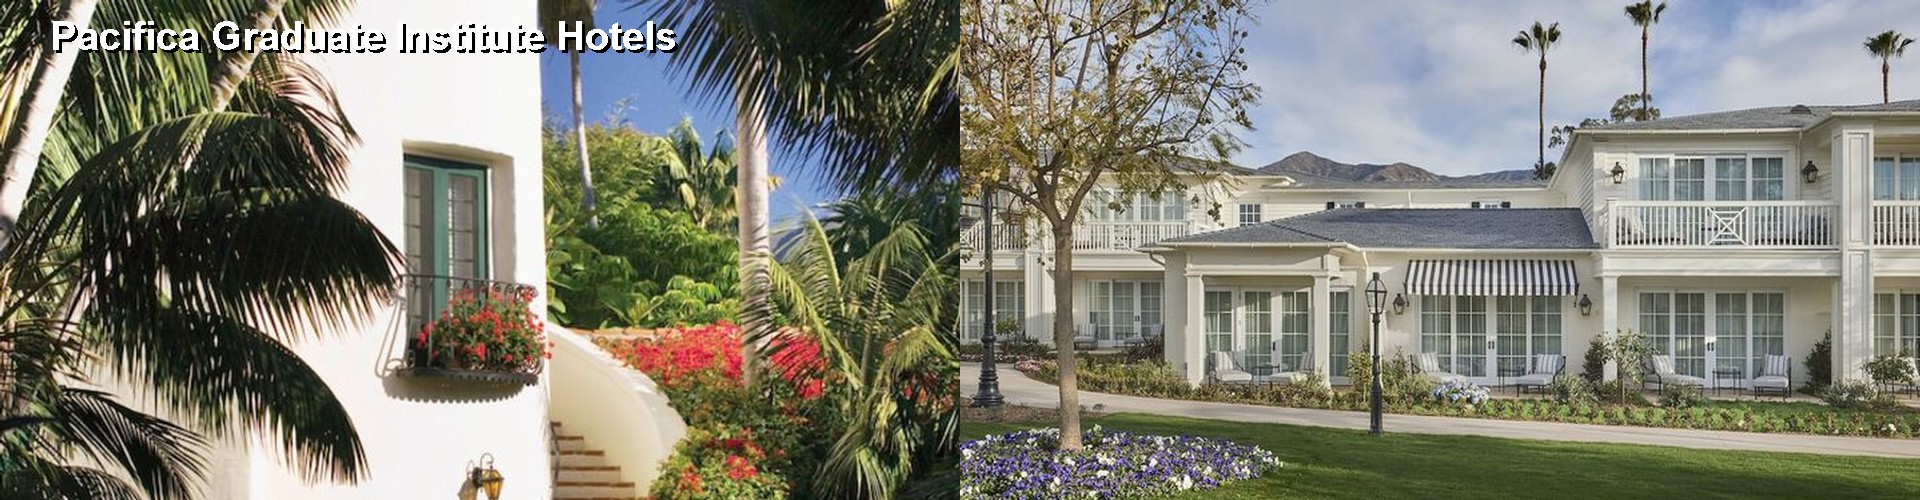 5 Best Hotels near Pacifica Graduate Institute